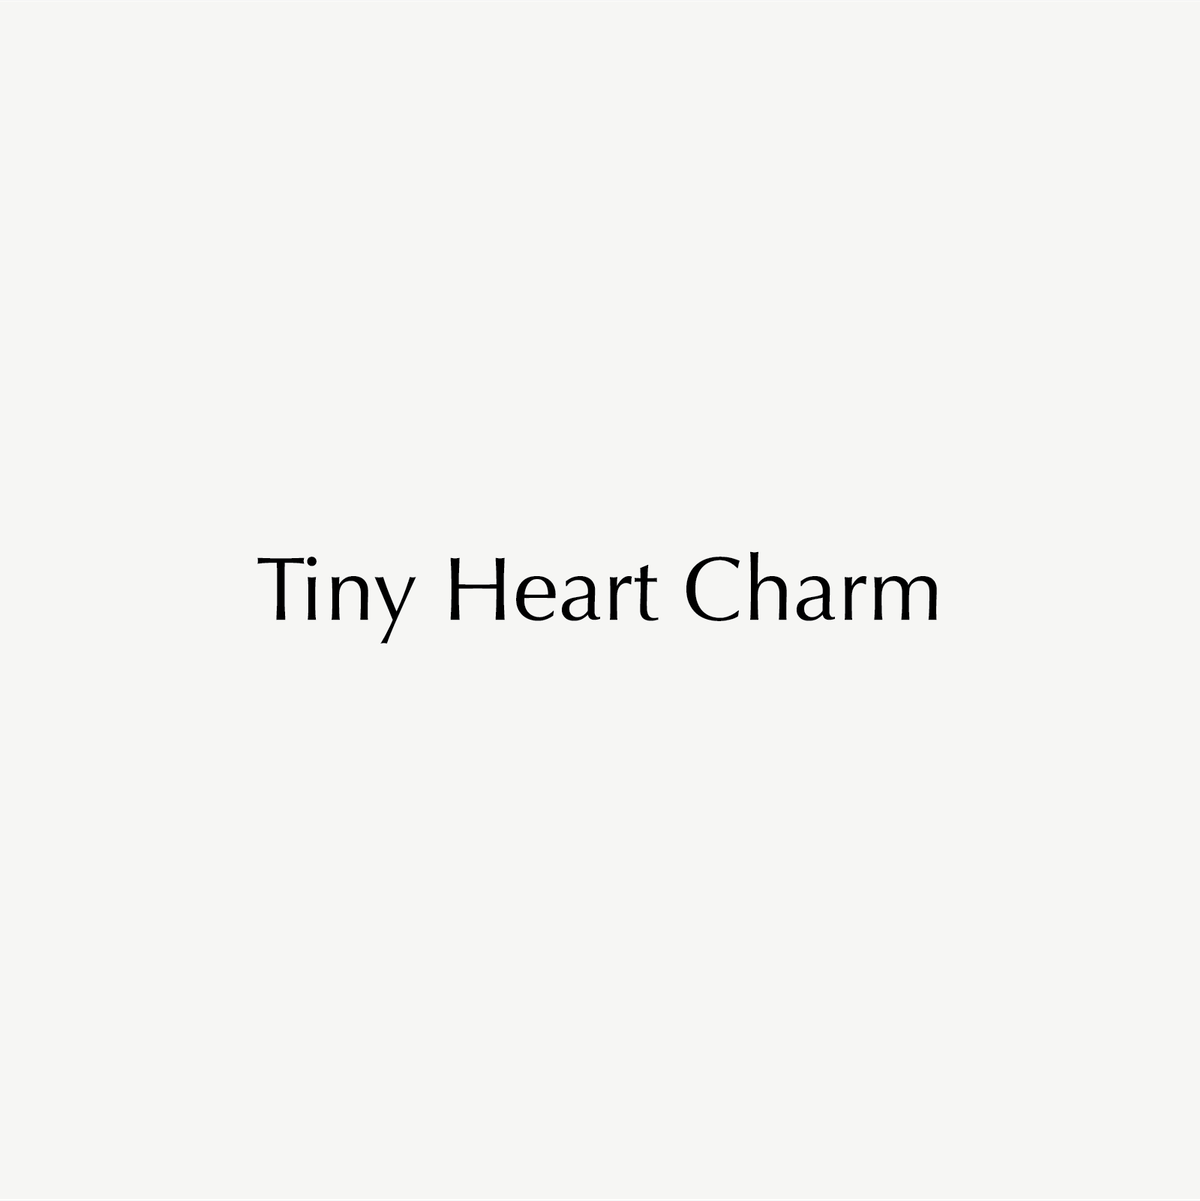 Tiny Heart Charm text